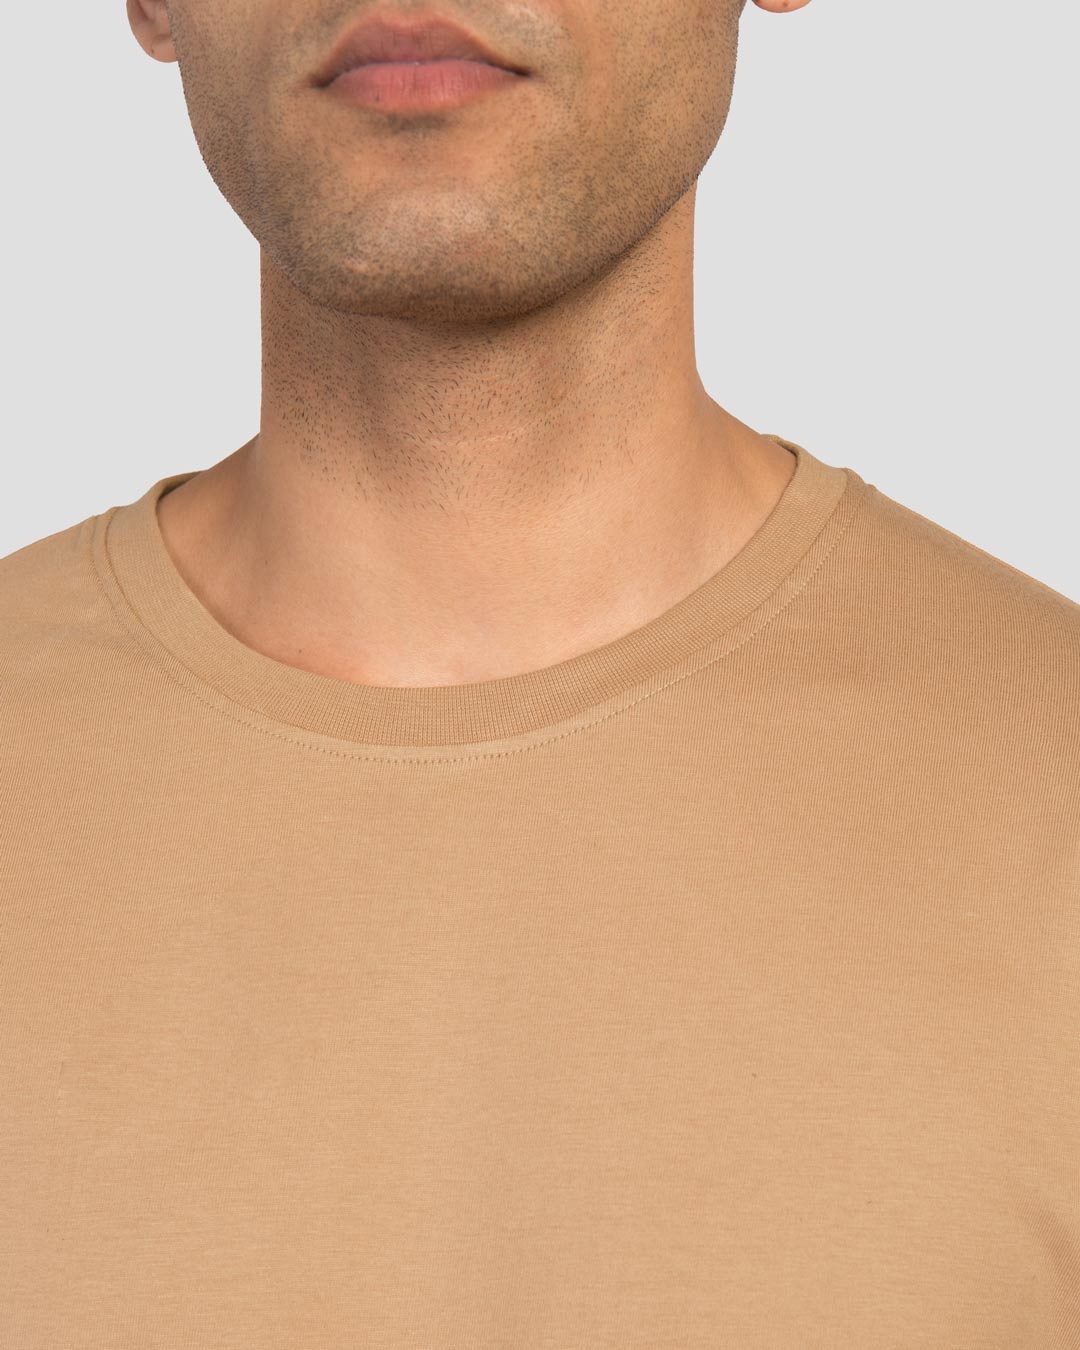 Shop Men's Plain Full Sleeve T-shirt Pack of 2(Black & Brown)